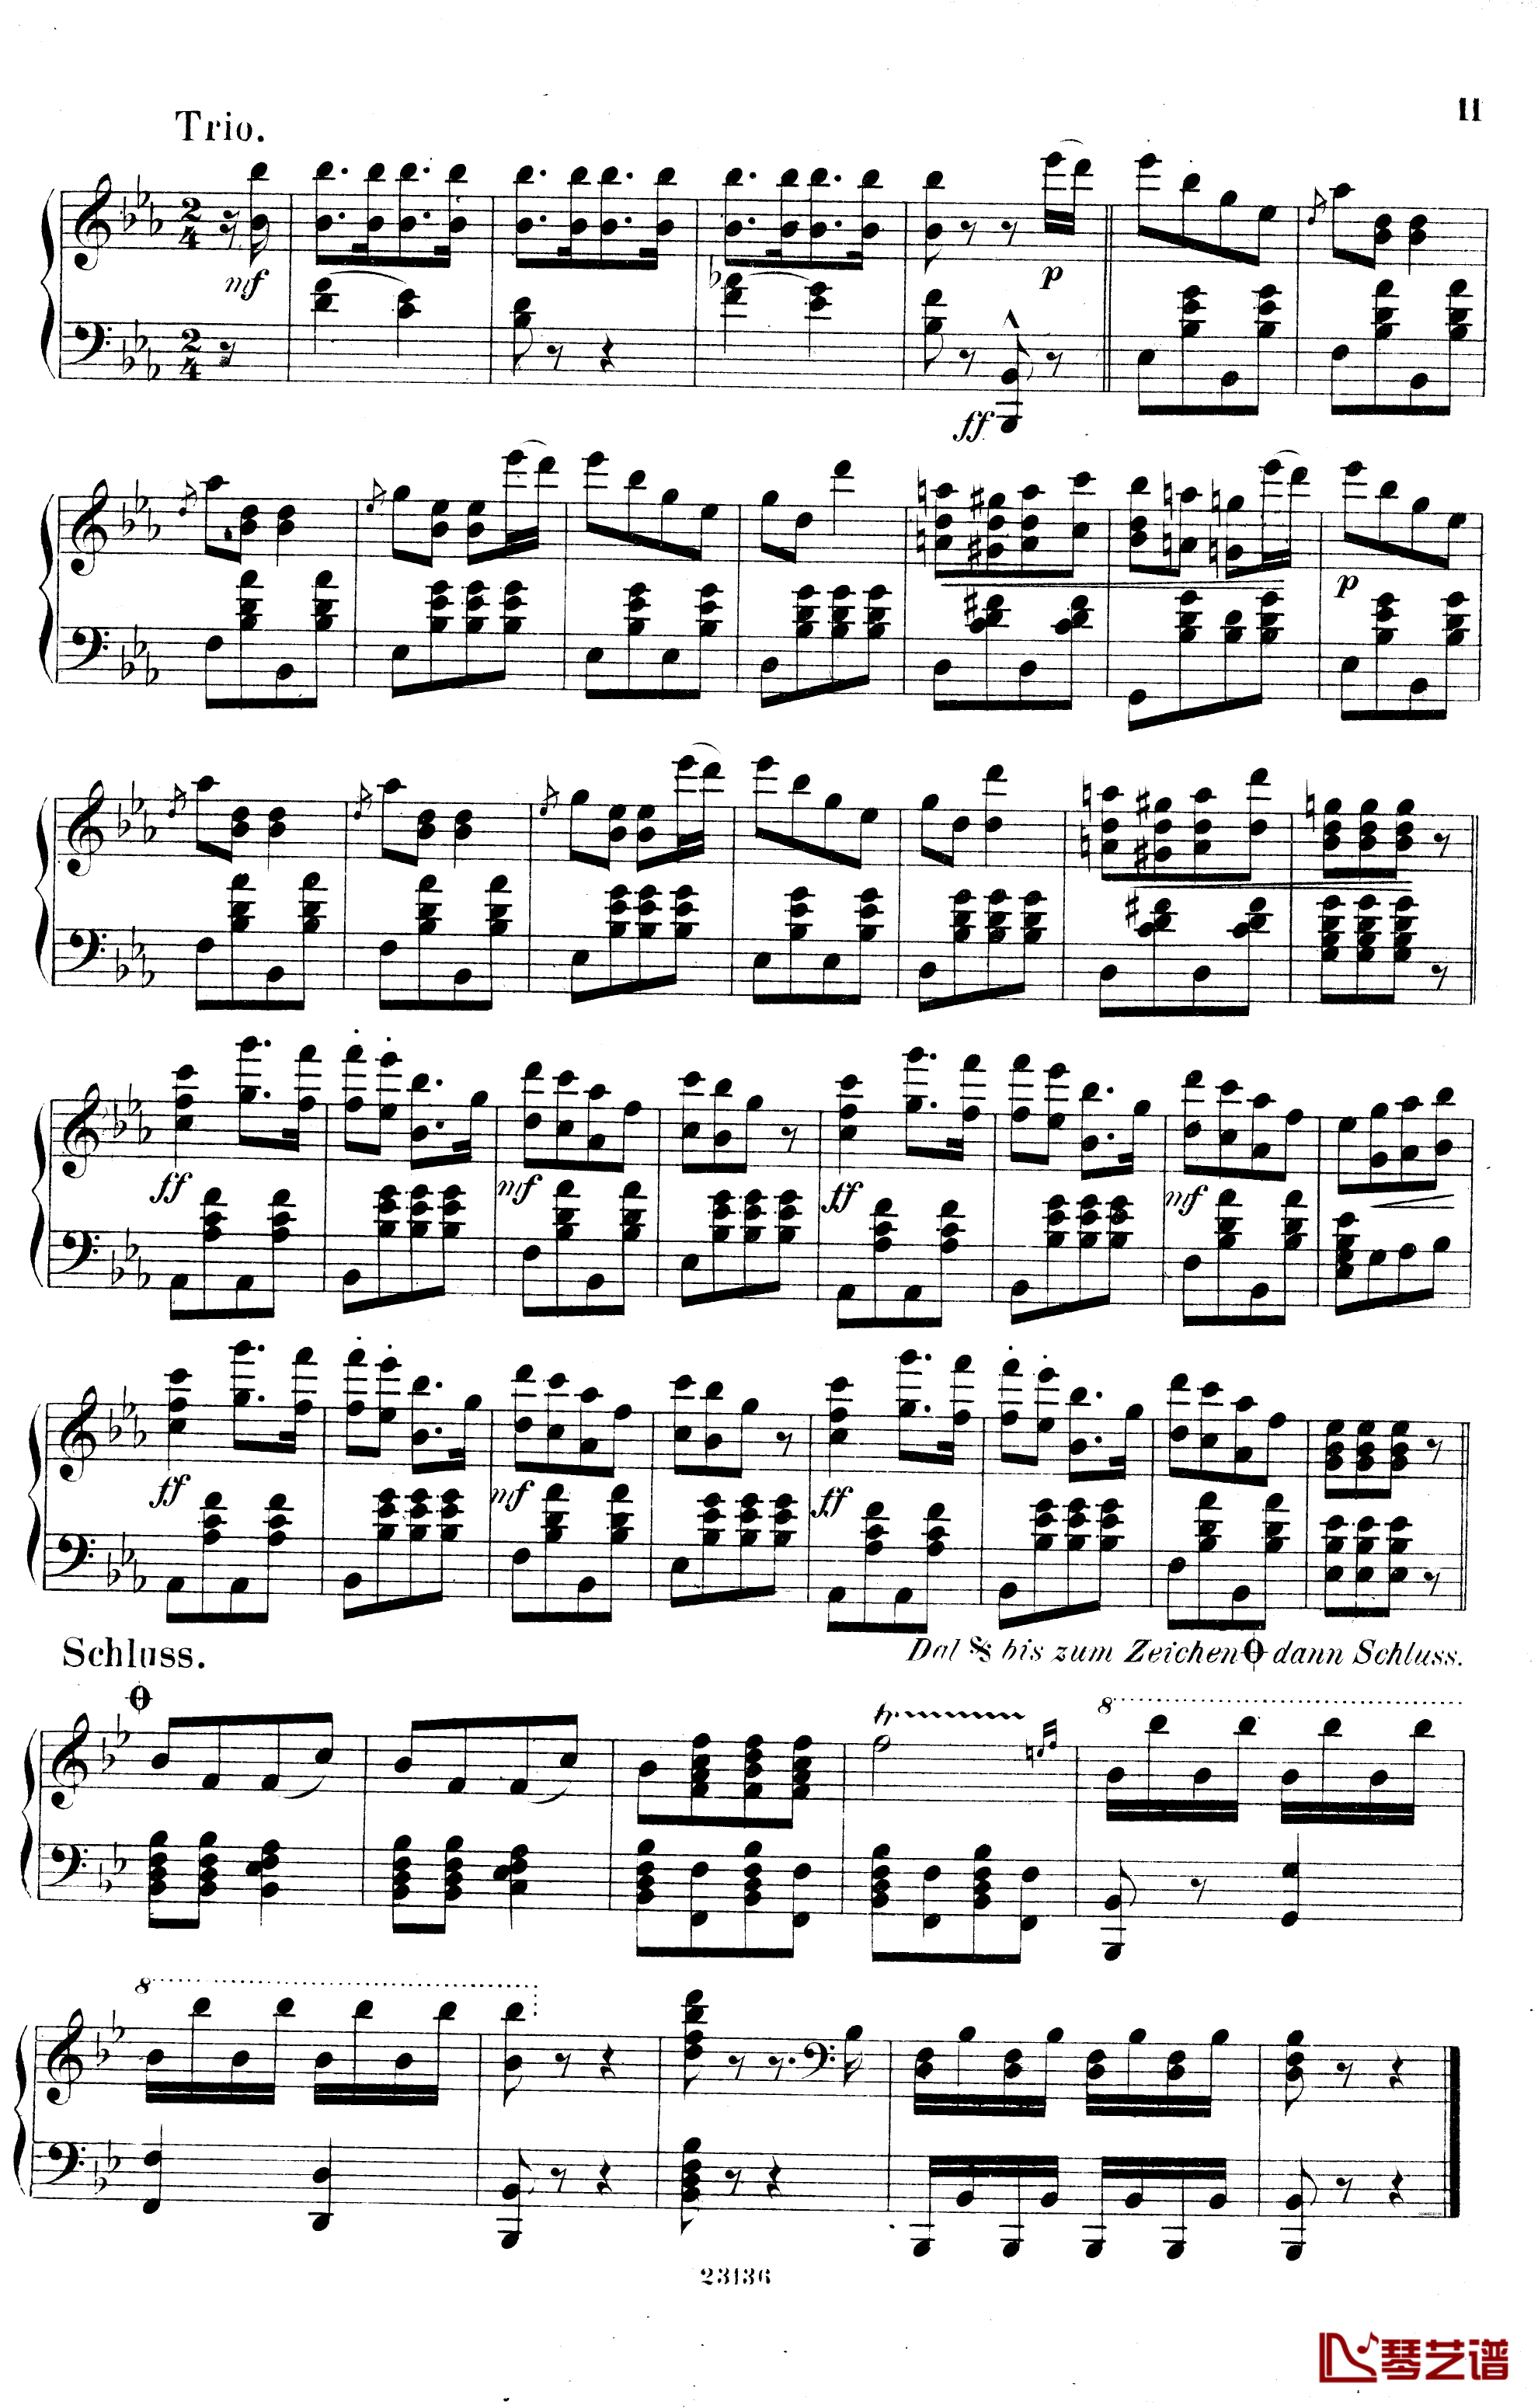  畅通无阻快速波尔卡  Op.45钢琴谱-爱德华 施特劳斯2